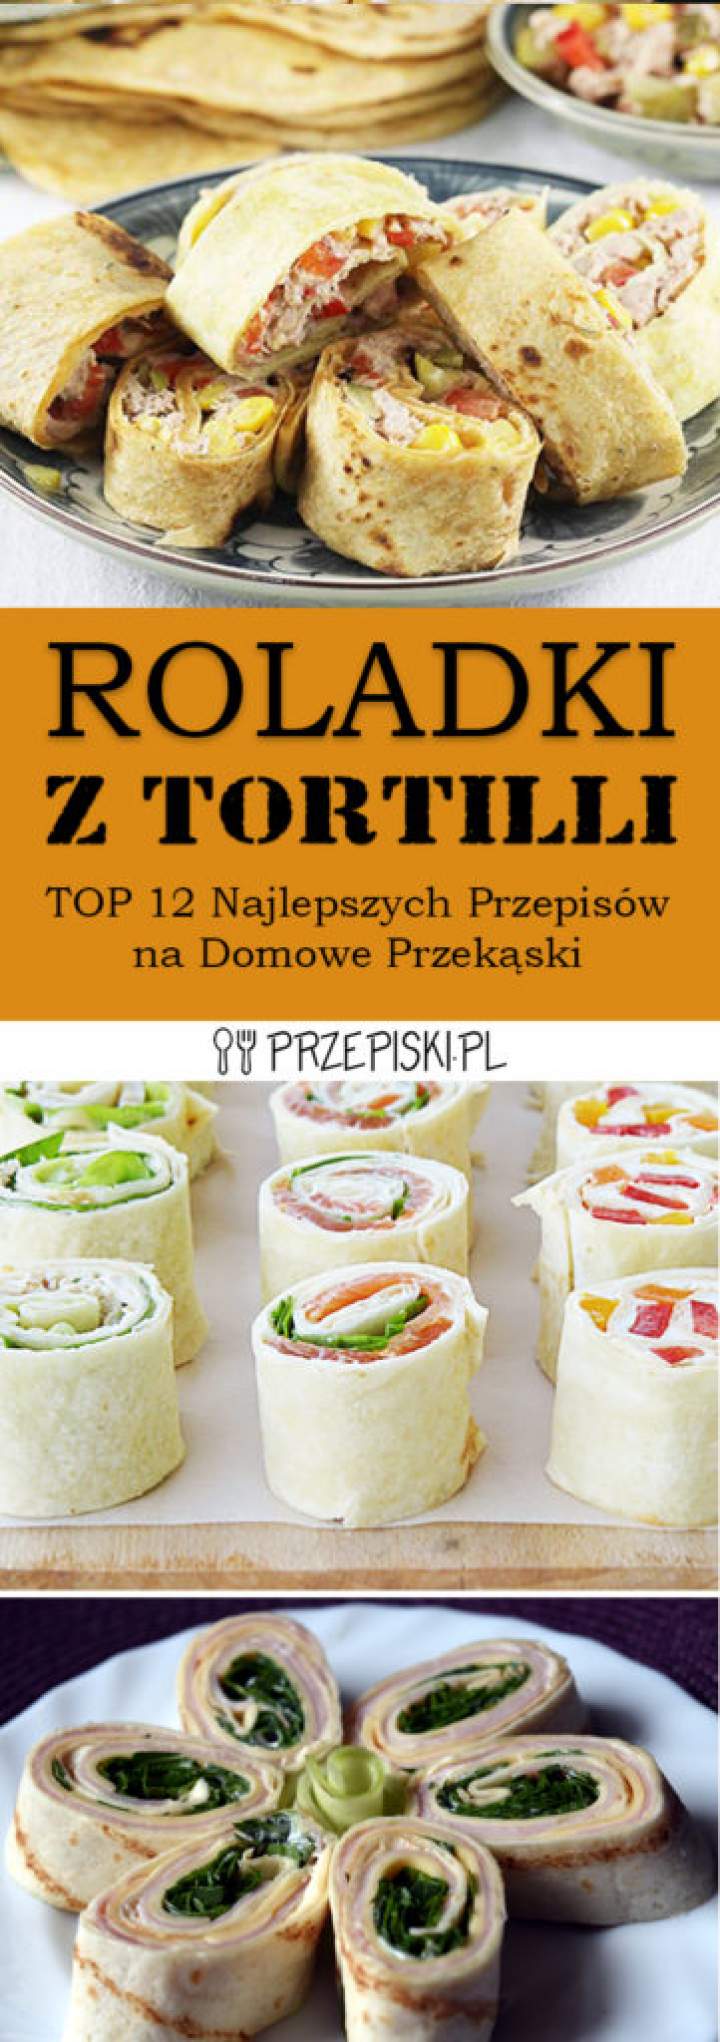 Roladki z Tortilli – TOP 12 Najlepszych Przepisów na Domowe Przekąski